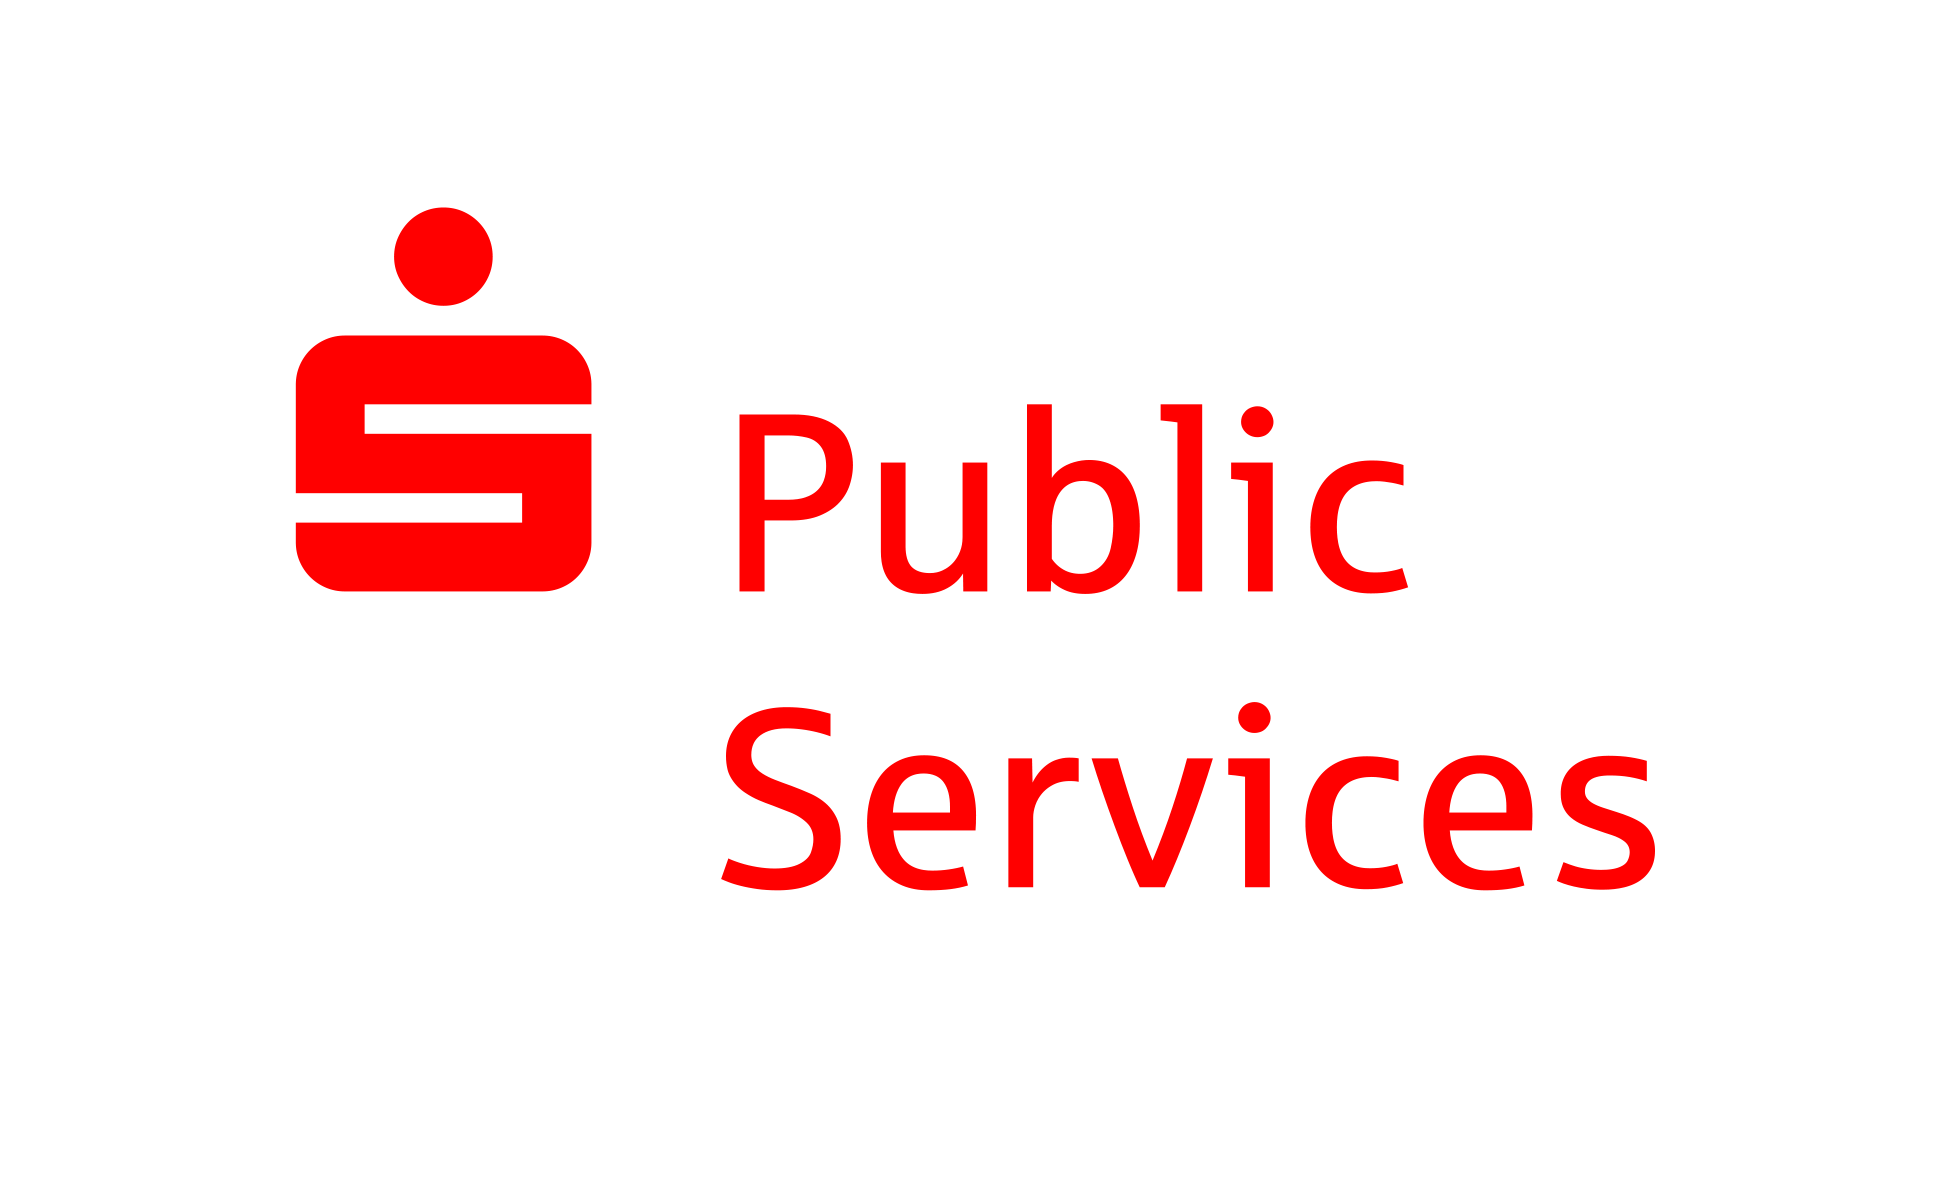 S-Public Services